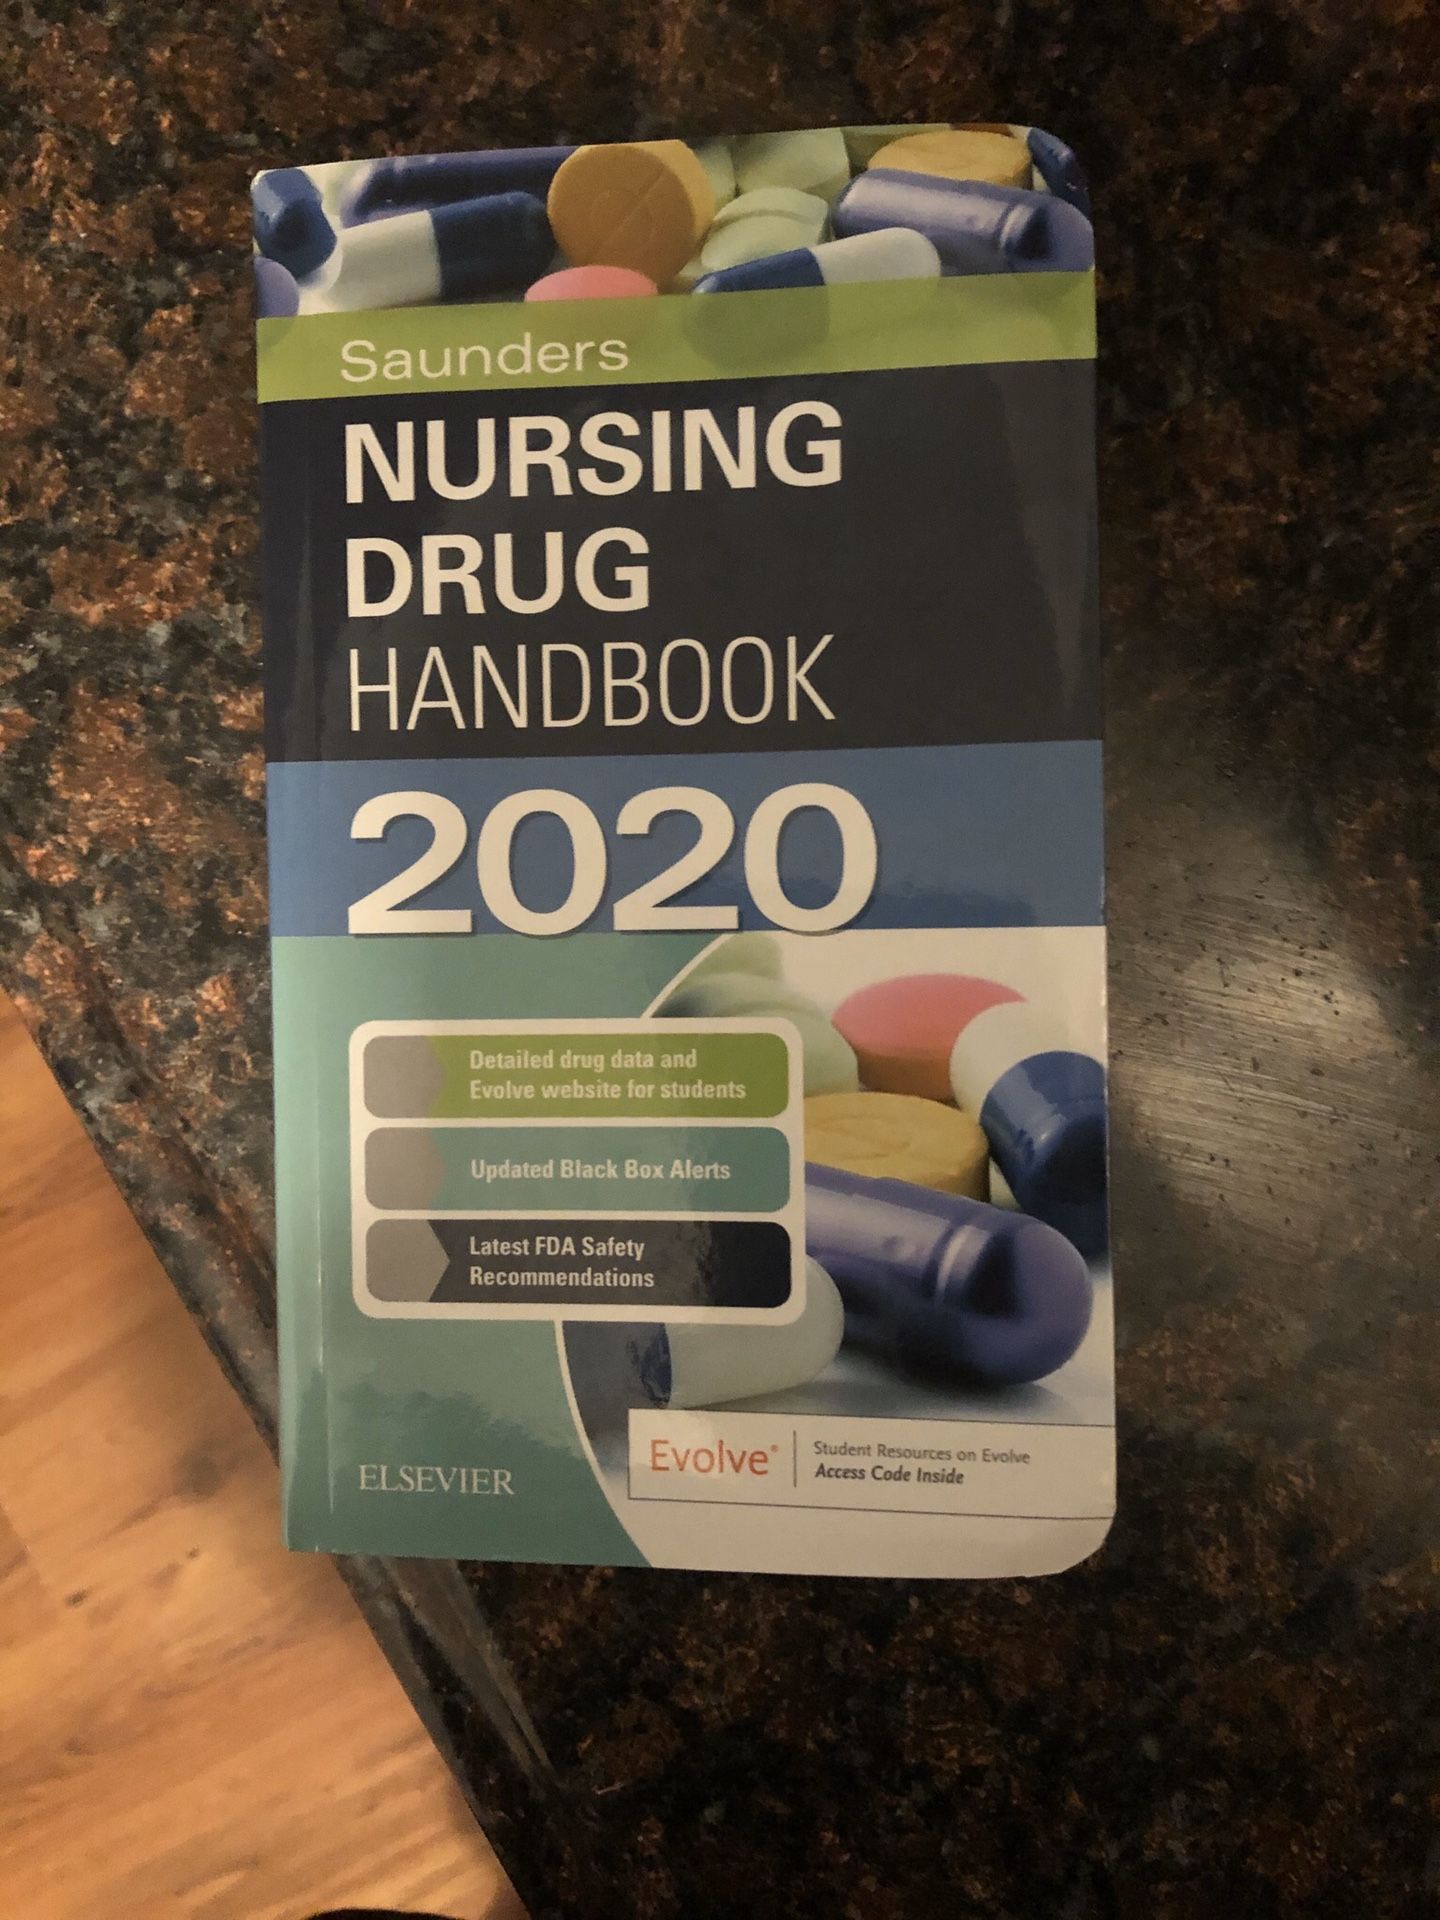 Saunders nursing drug handbook 2020